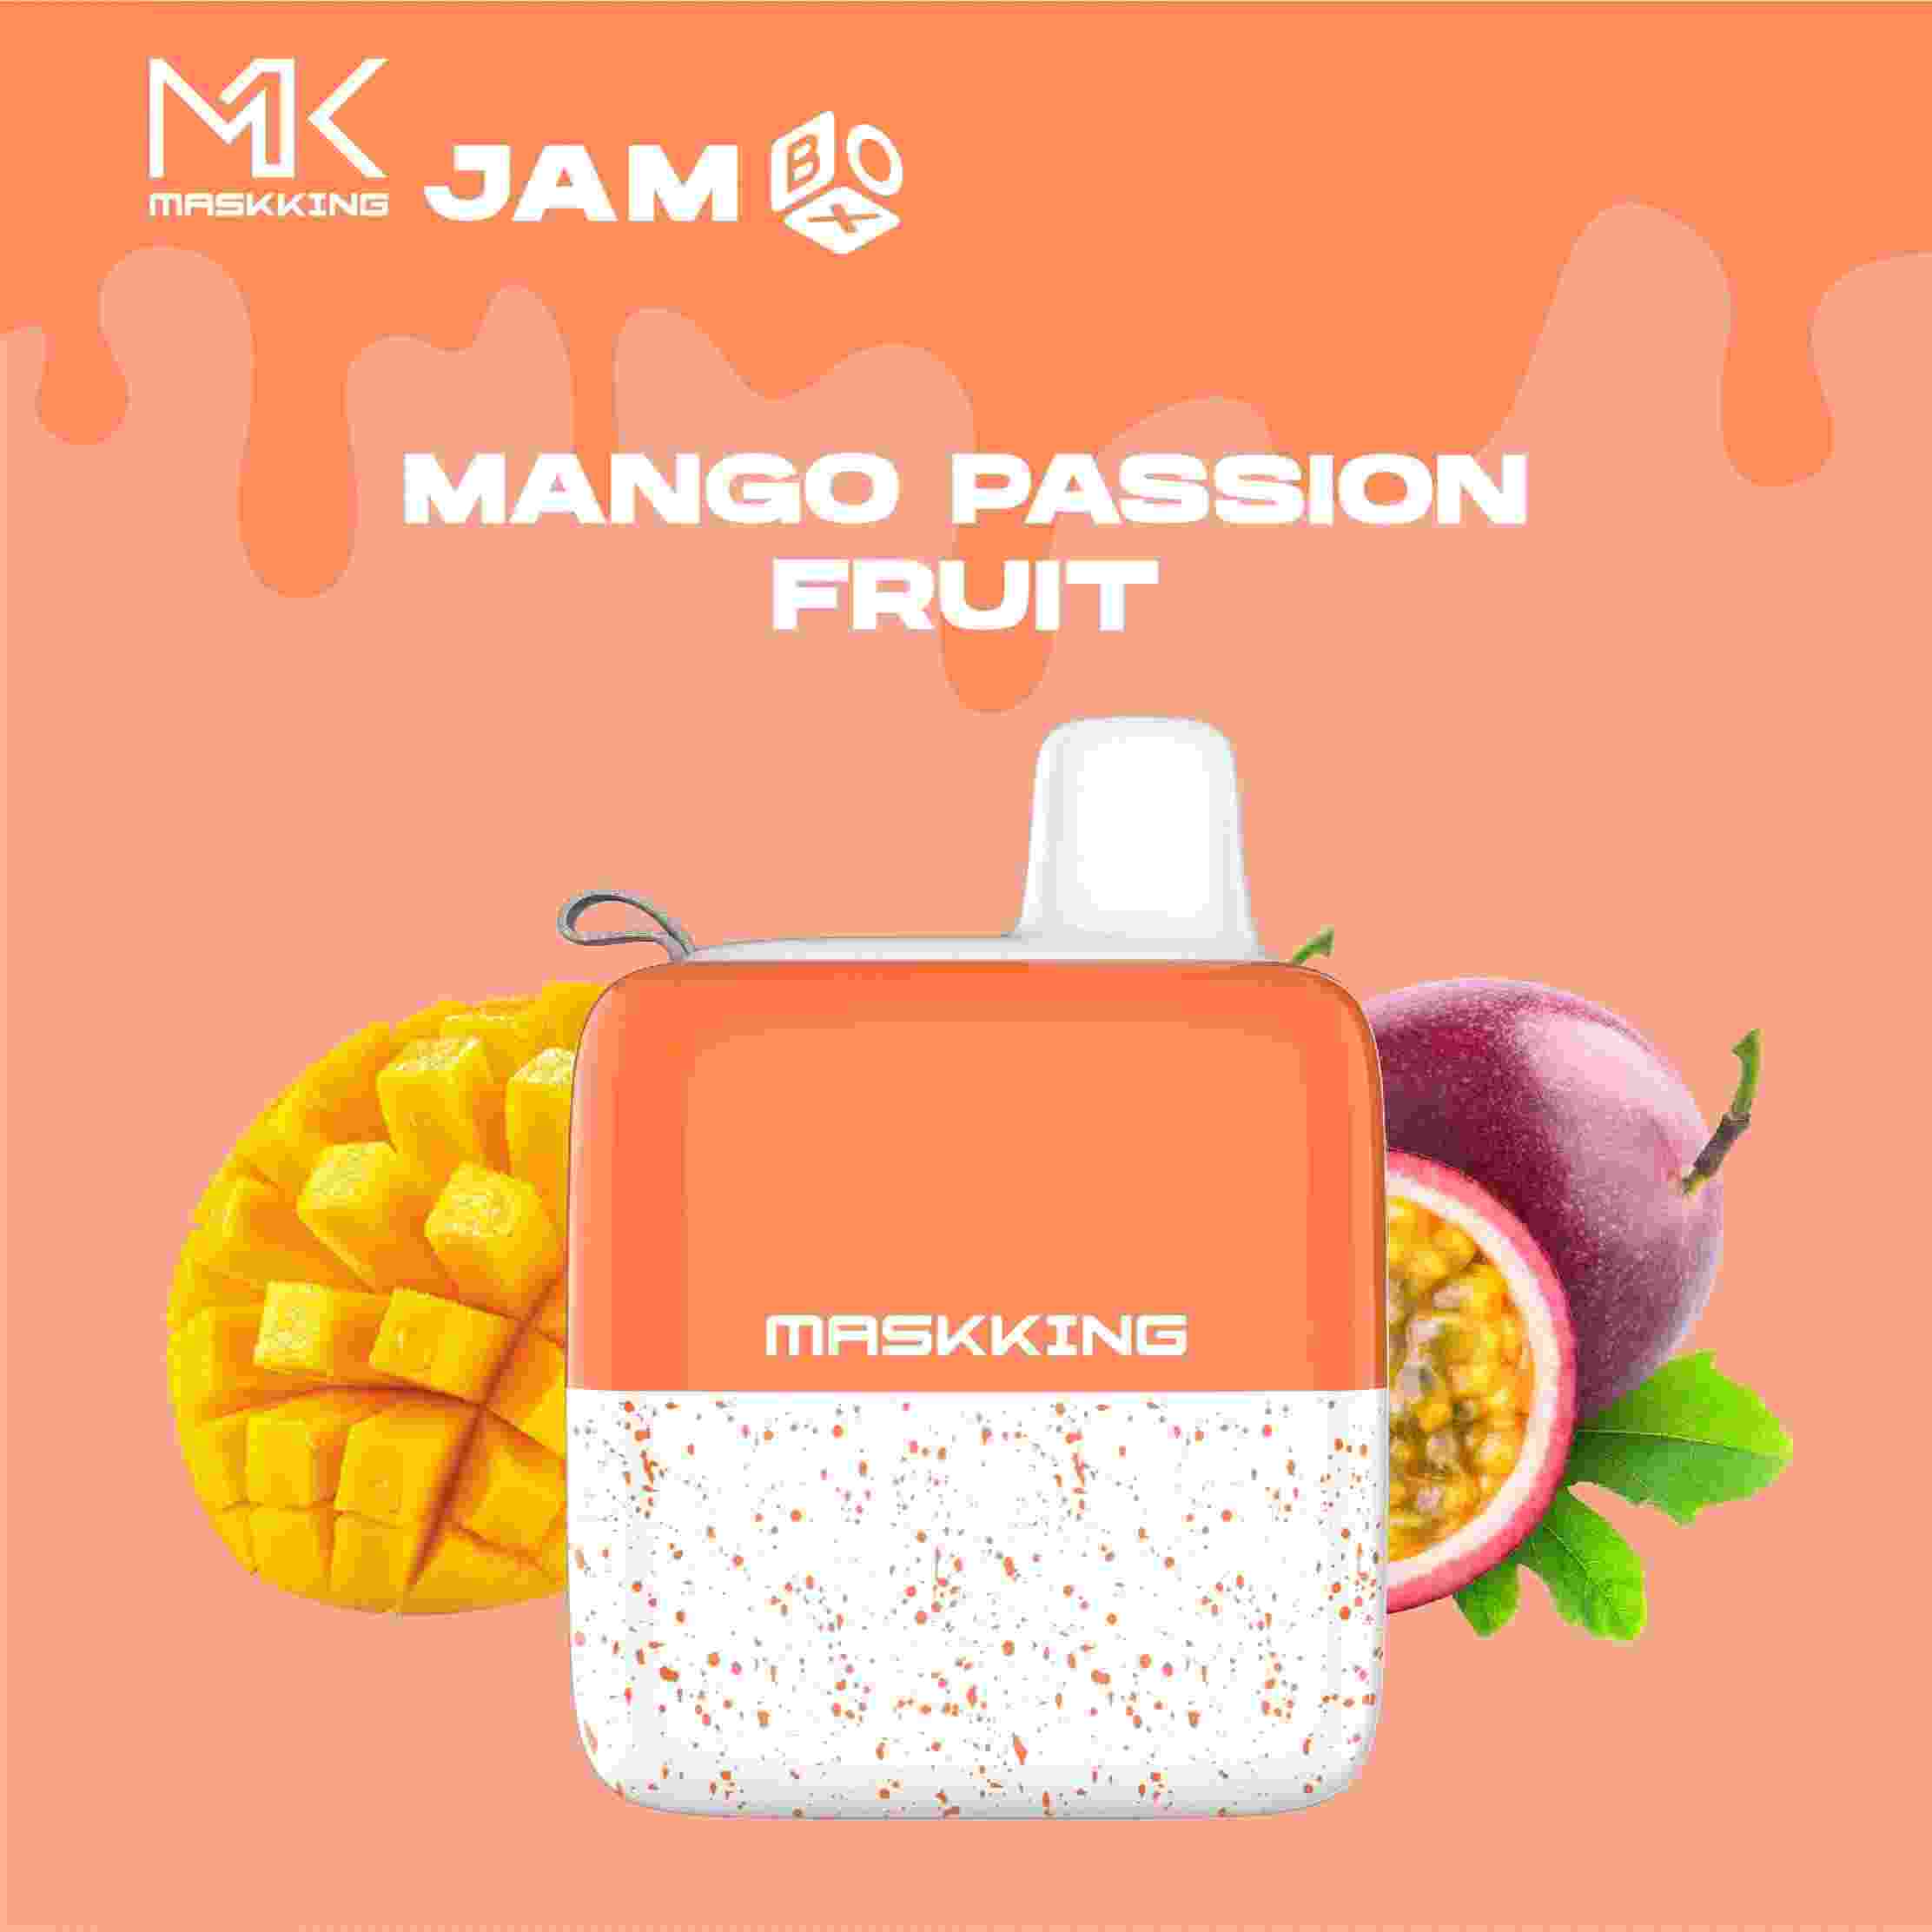 Maskking Jam Box - Mango Passion Fruit